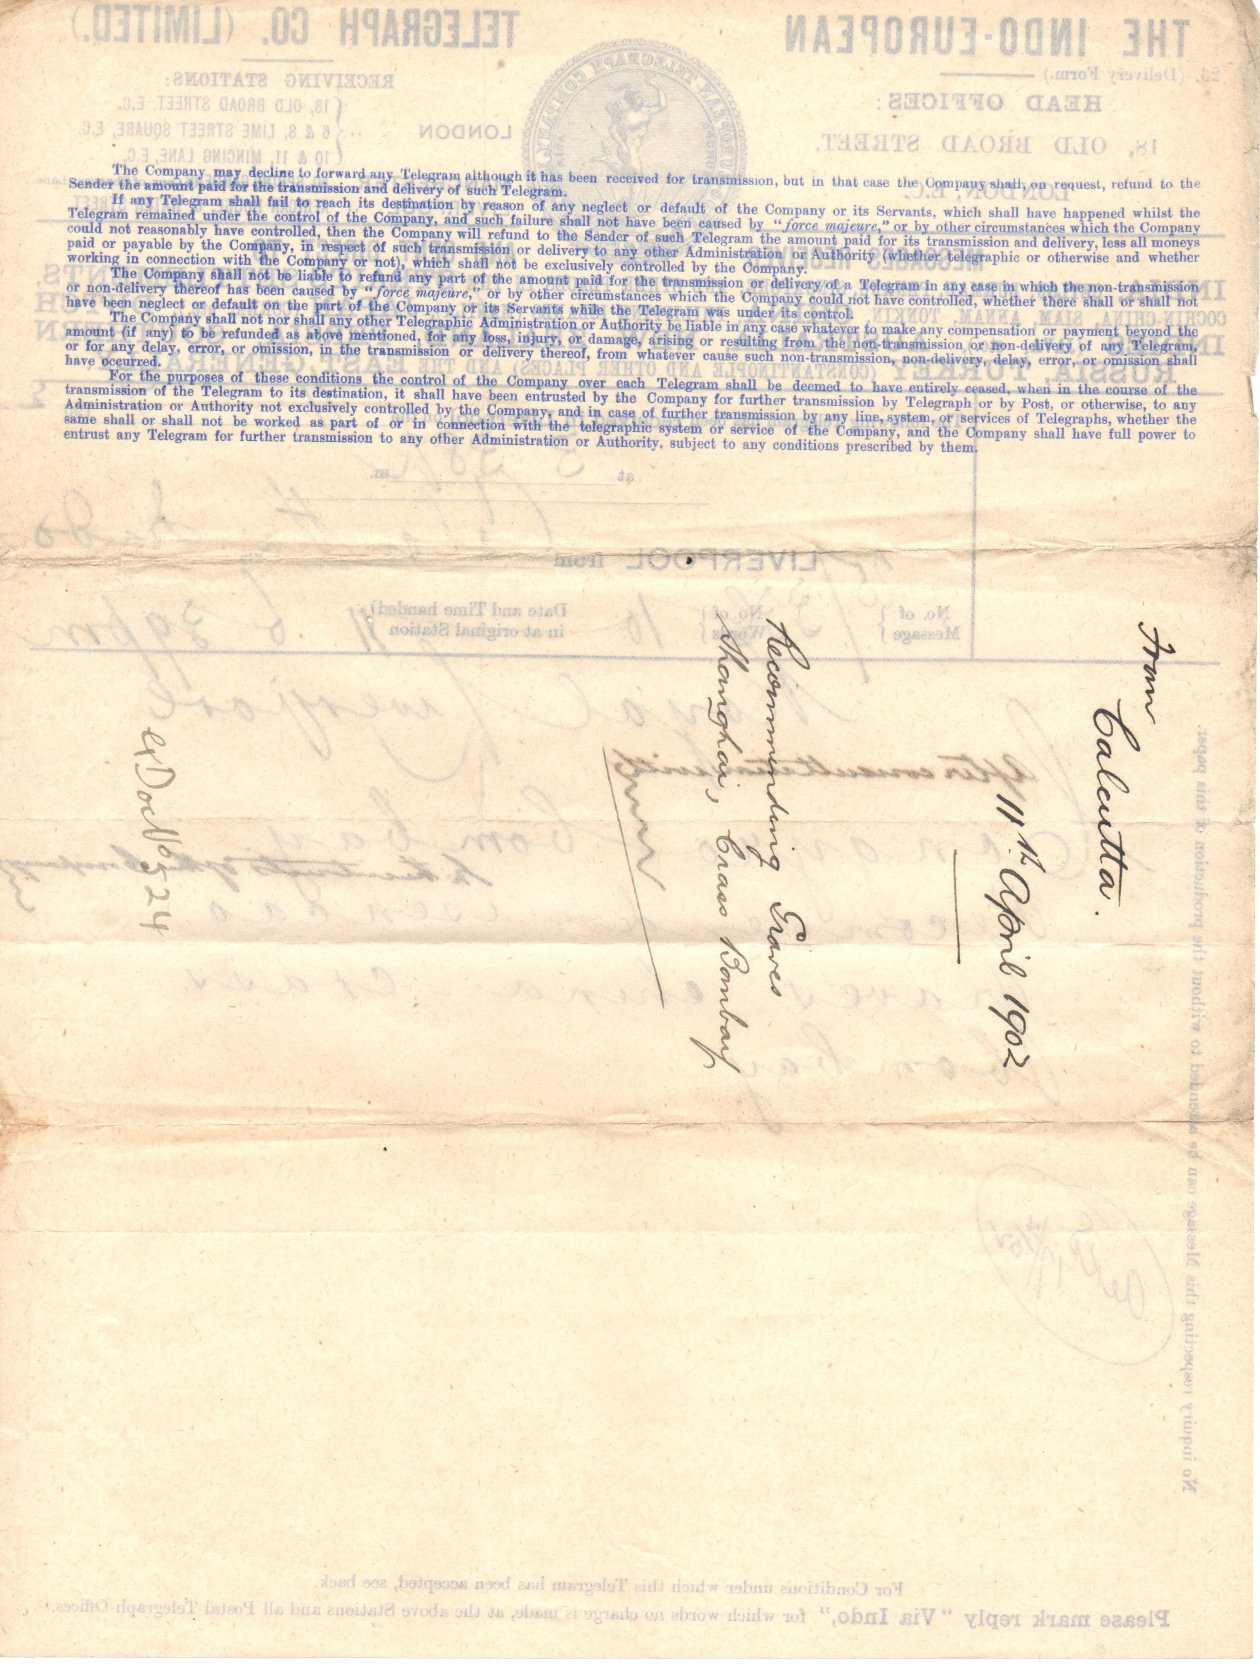 Indo Telegram Co. Form 23 - Liverpool, back